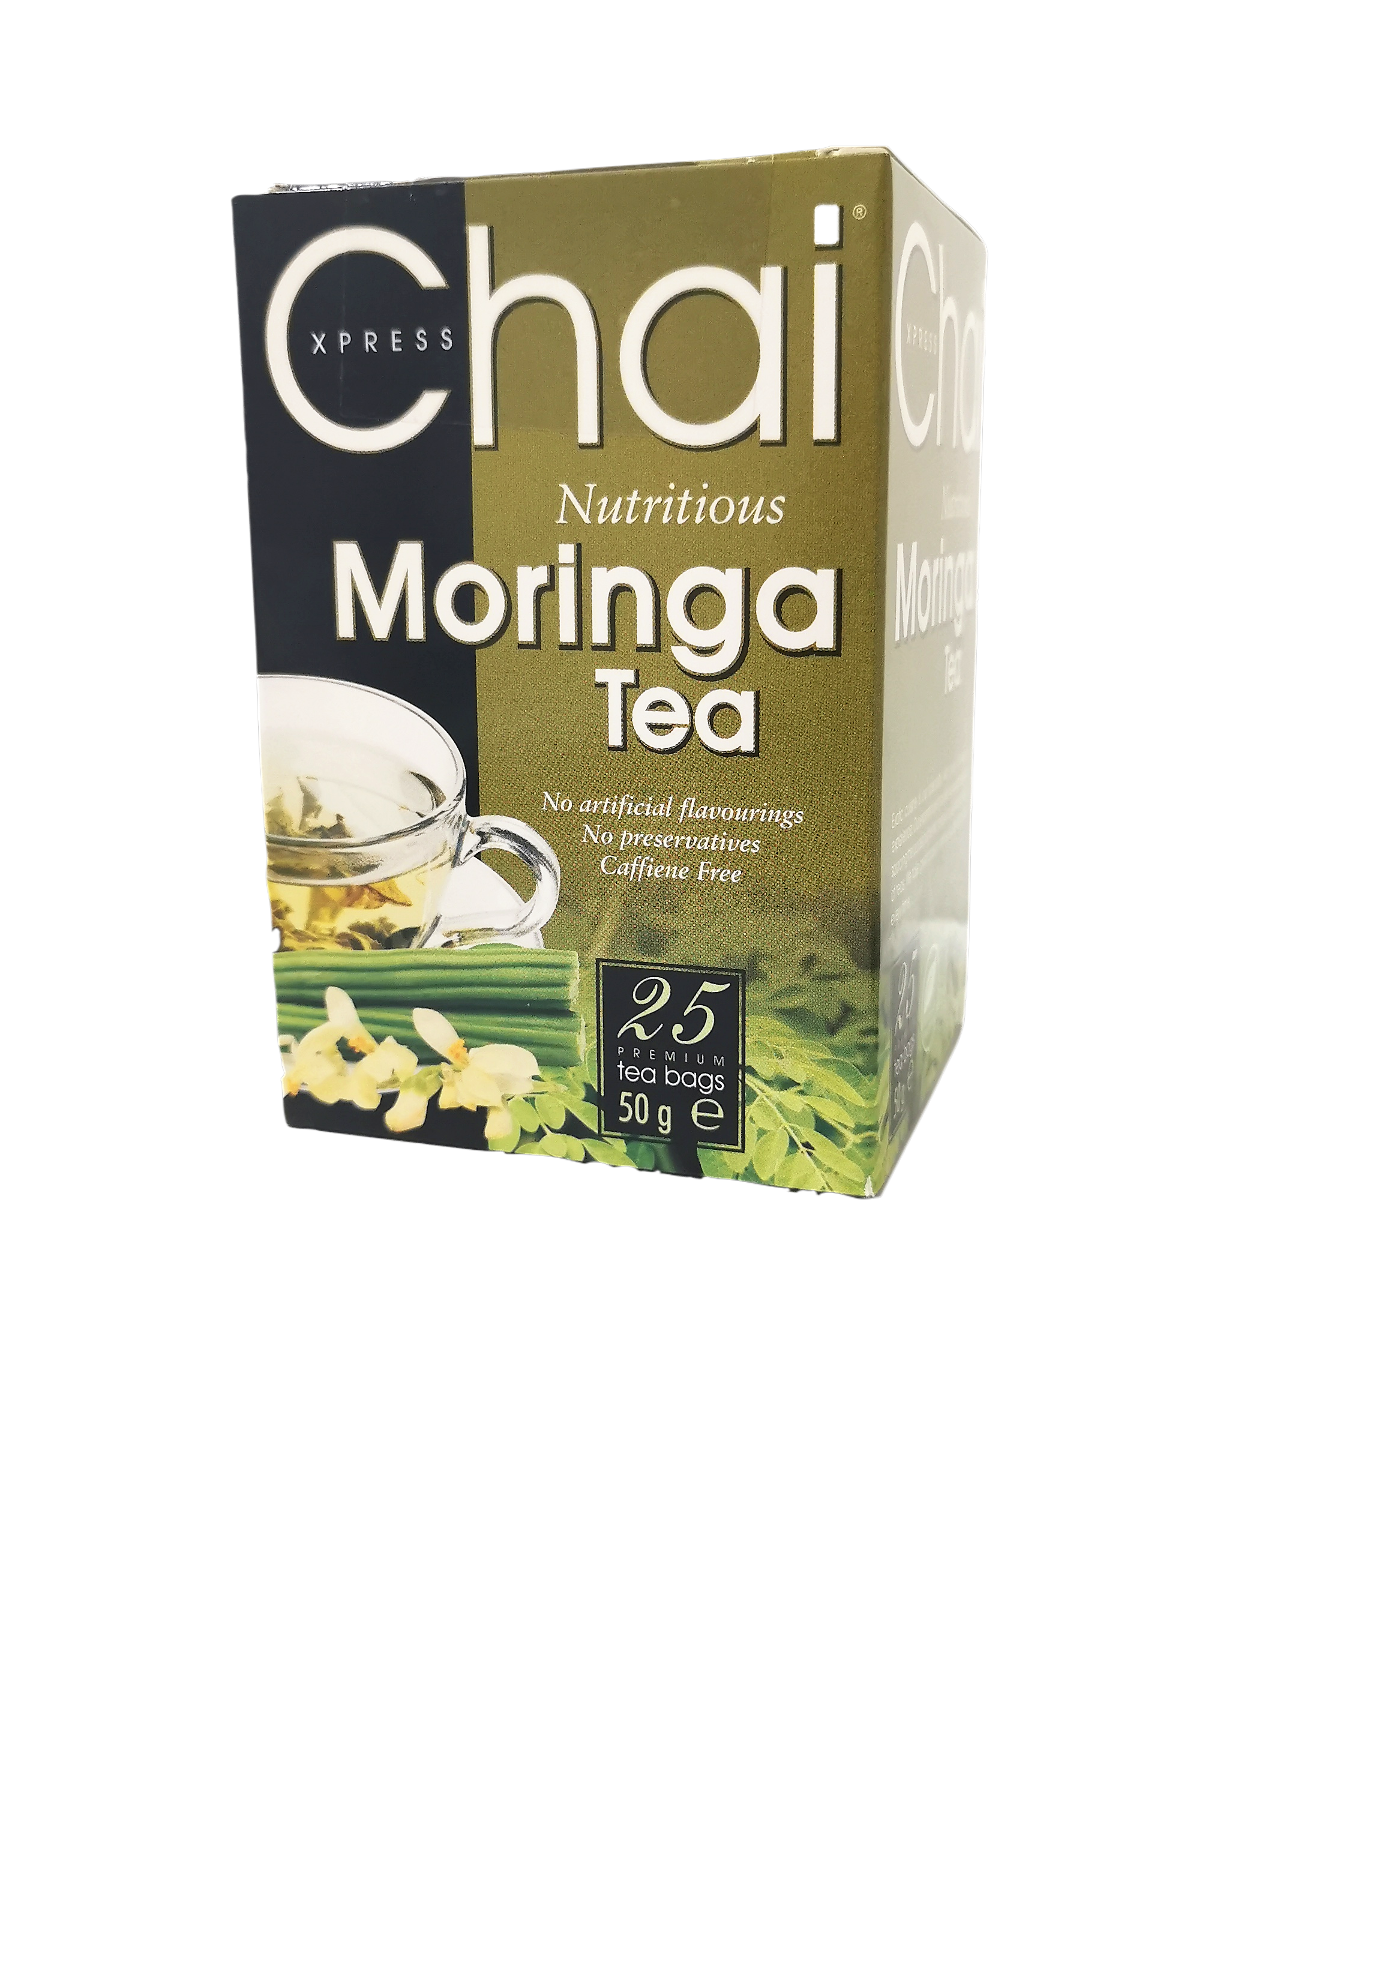 Express Chai Moringa Tea